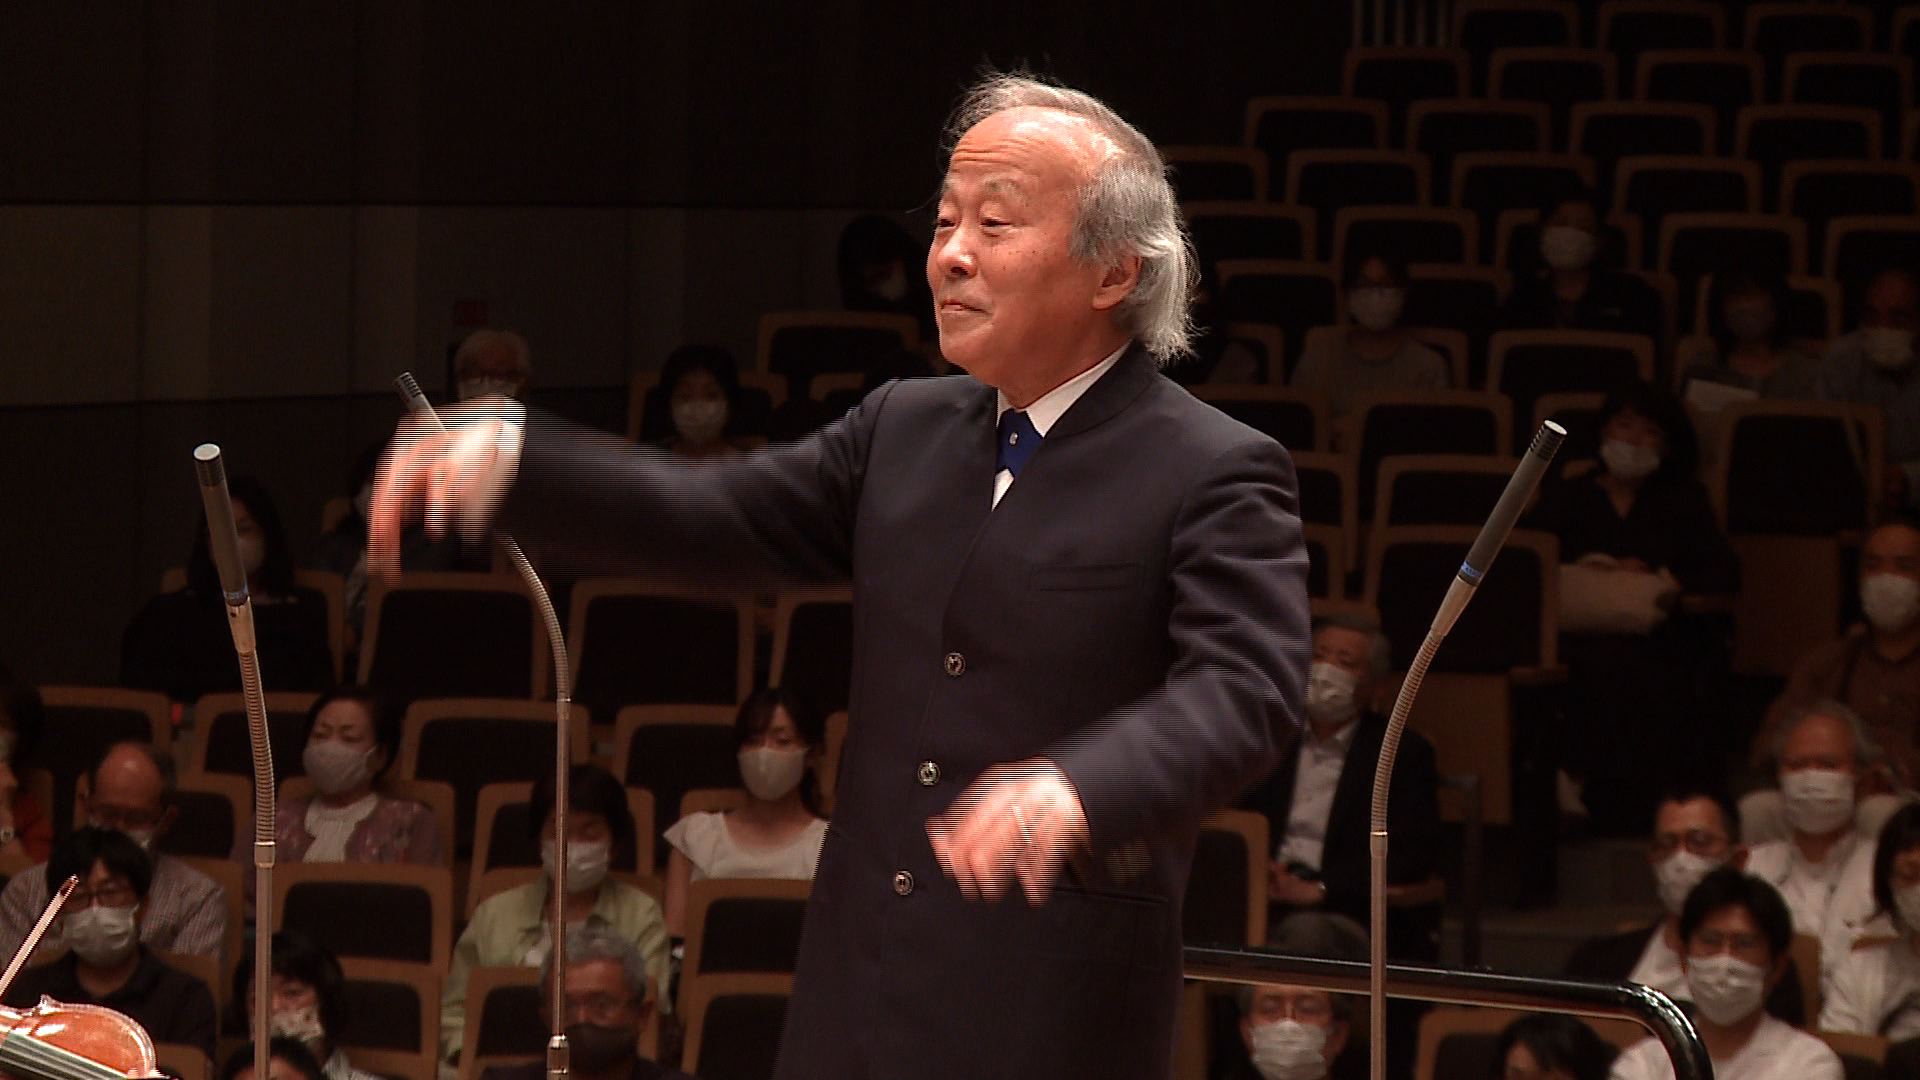 指揮：尾高忠明
ヴァイオリン・ソロ：佐久間聡一（第一コンサートマスター）　
広島交響楽団
リヒャルト・シュトラウス：交響詩「英雄の生涯」作品40より
Tadaaki Otaka: Conductor
Soichi sakuma, Violin（Concertmaster)
Hiroshima Symphony Orchestra
Richard Strauss: Ein Heldenleben
